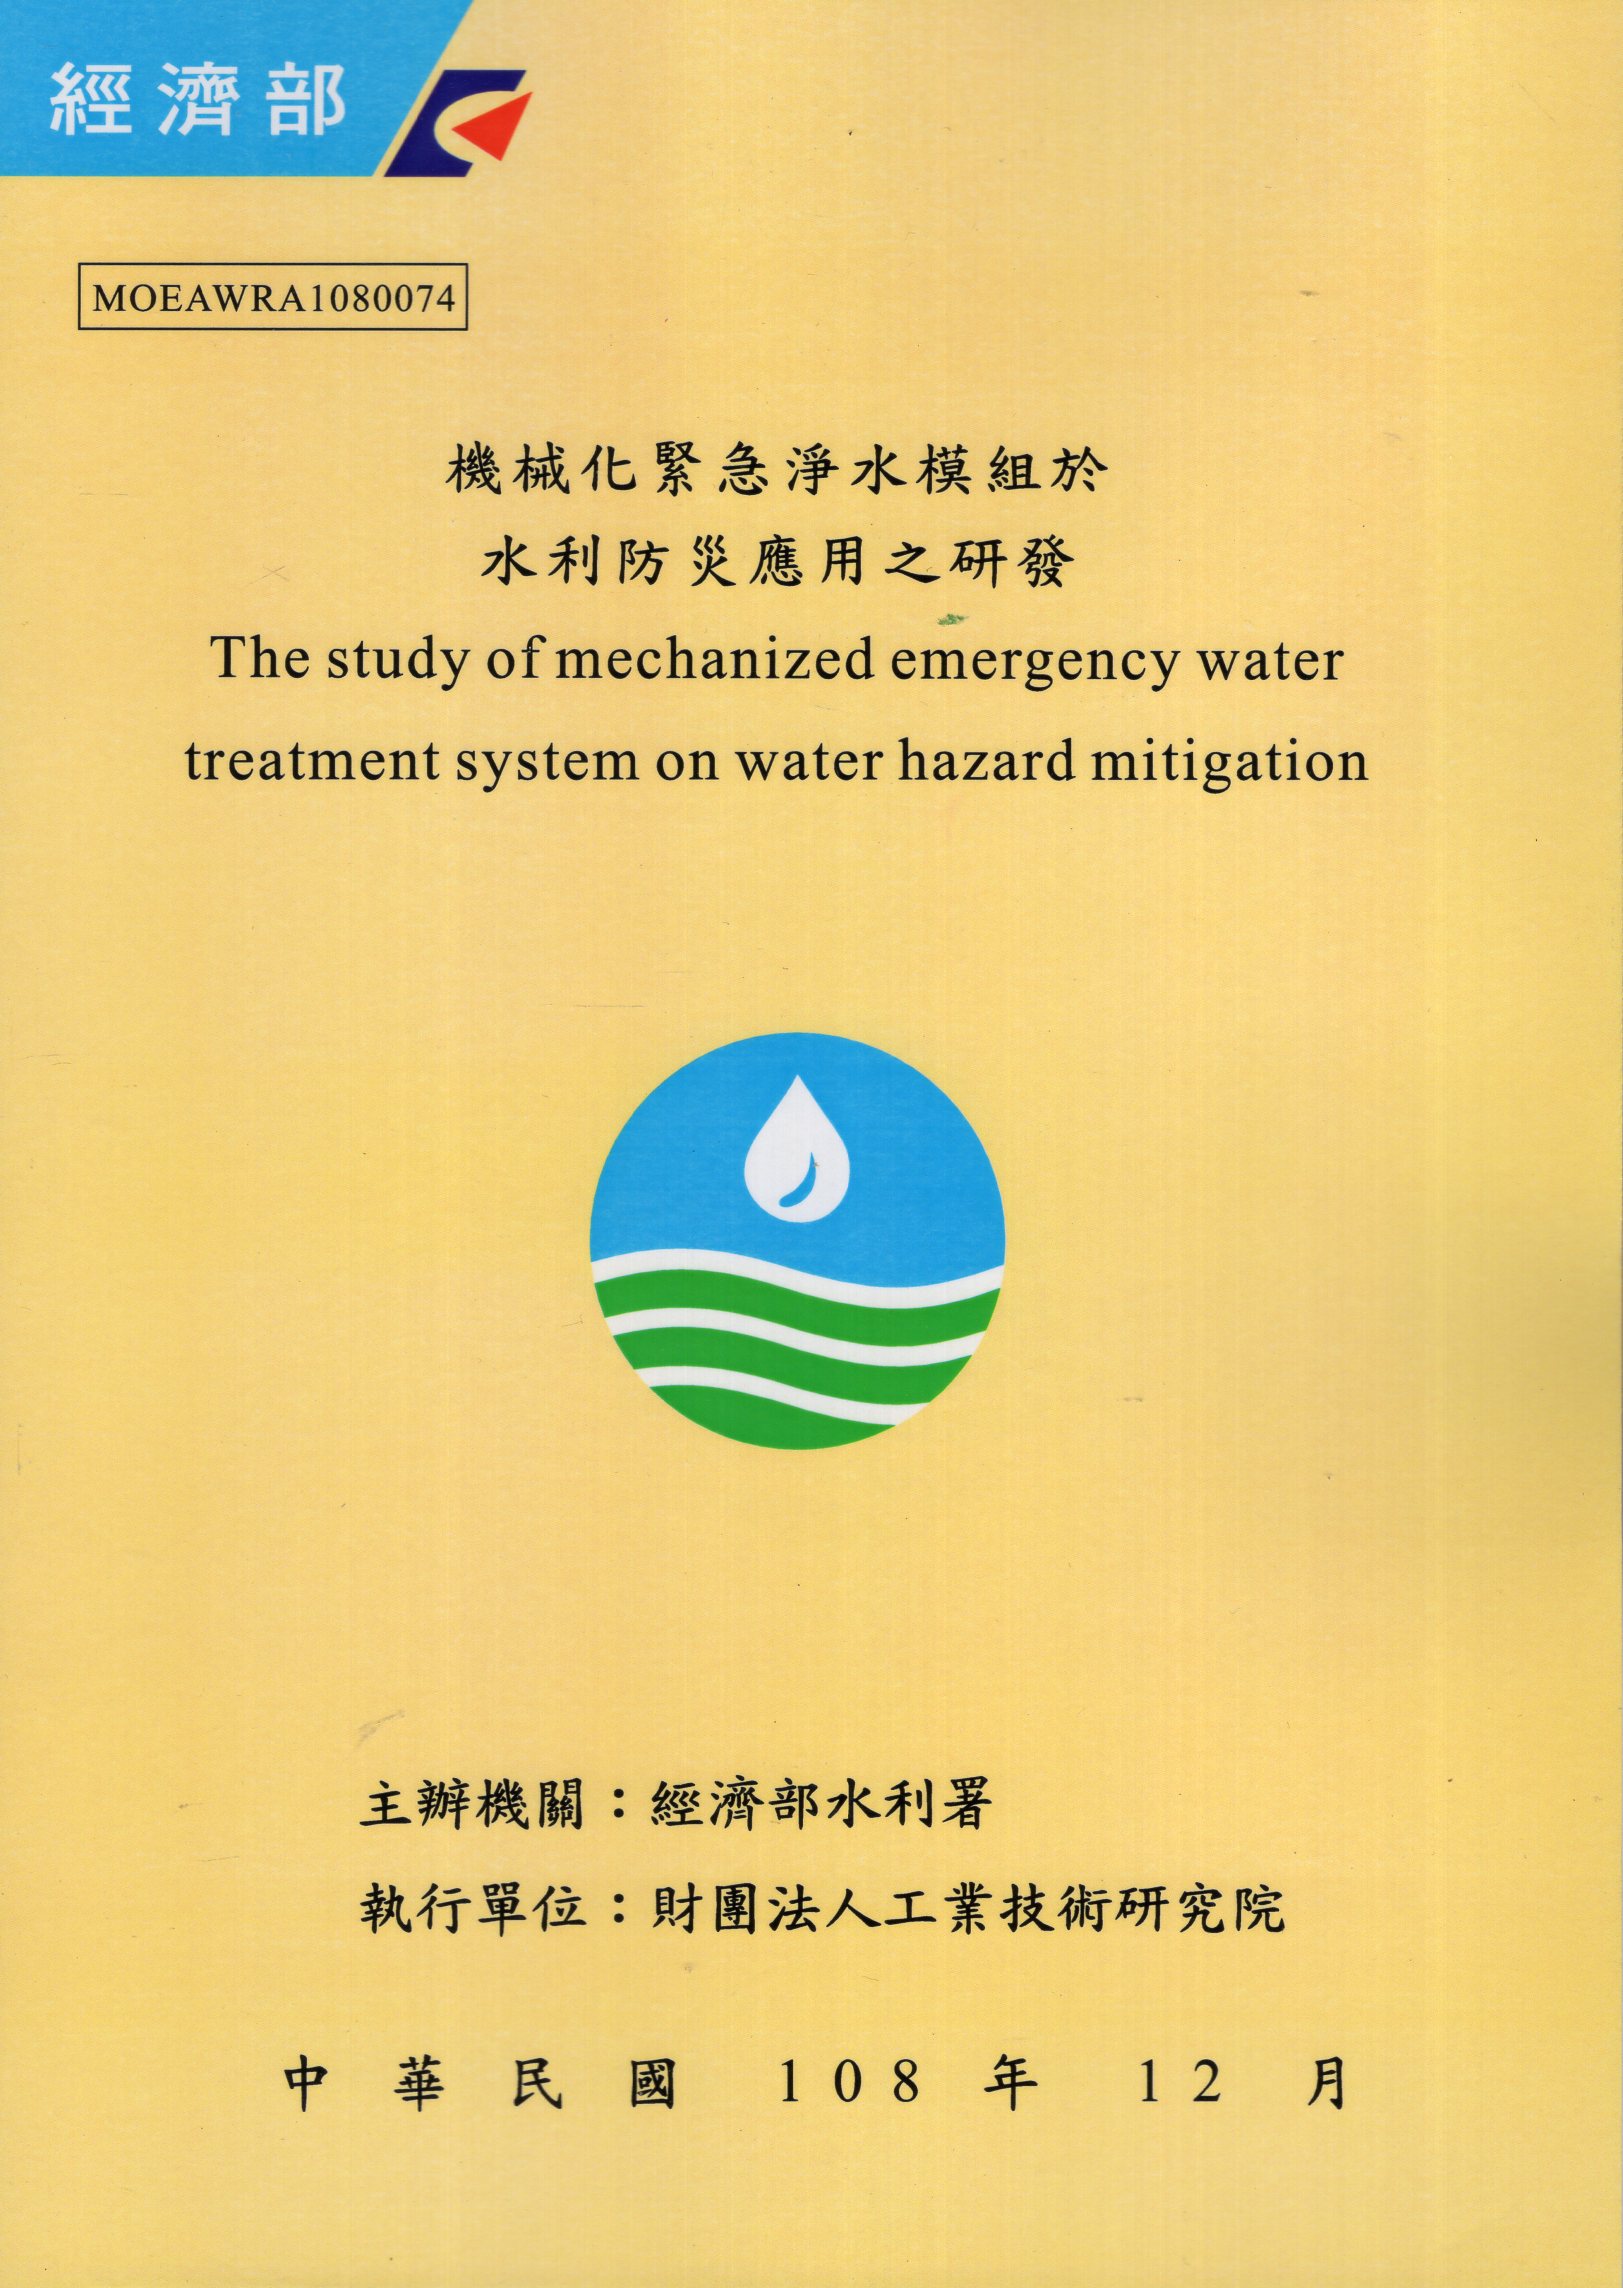 機械化緊急淨水模組於水利防災應用之研發